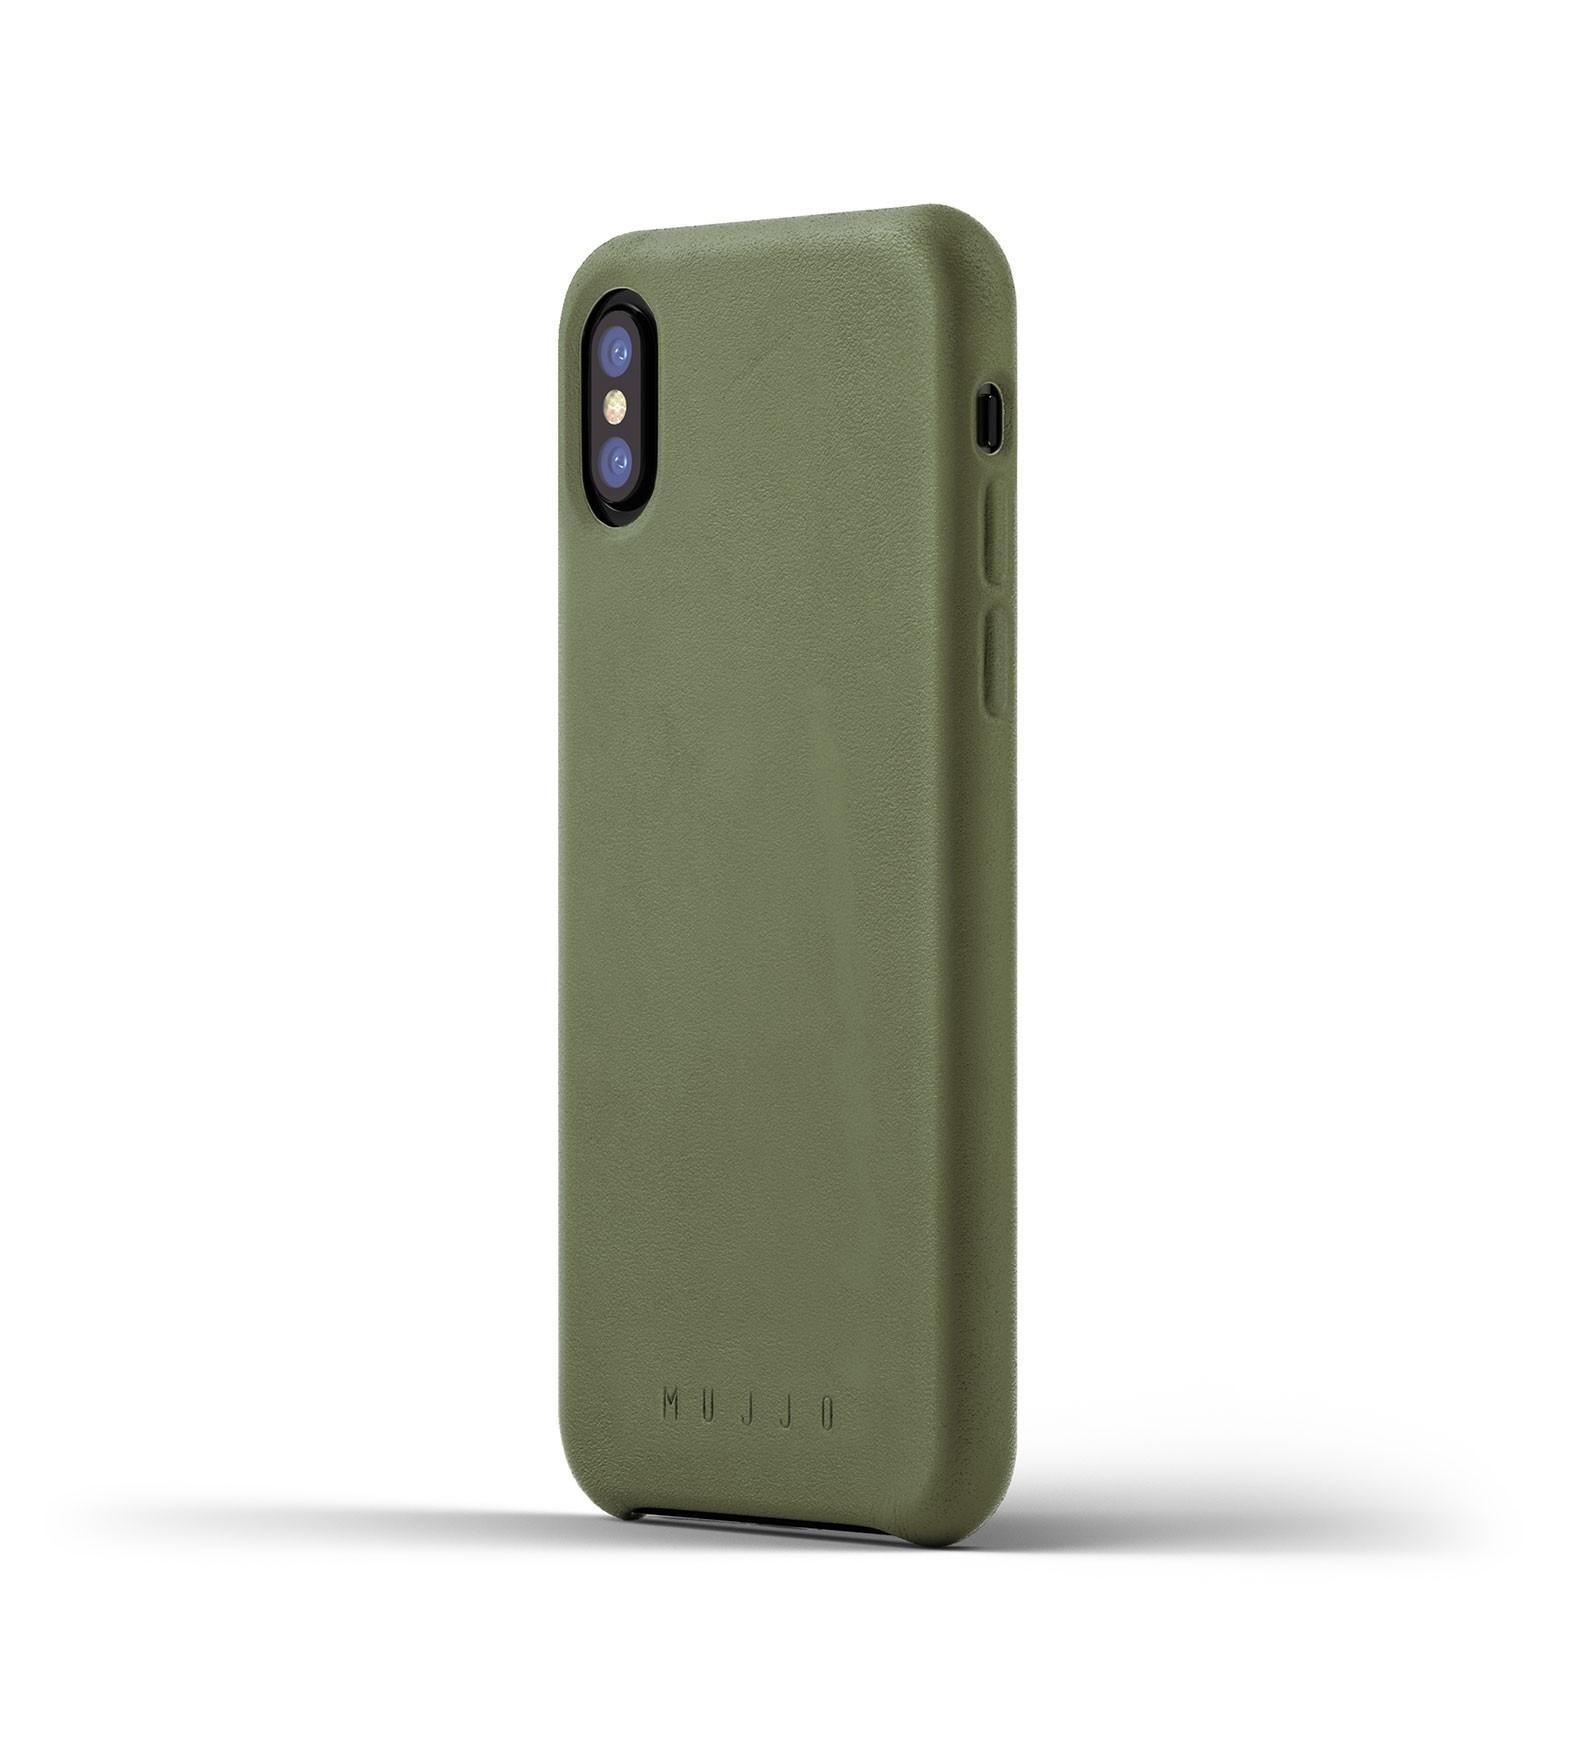  Mujjo Coque de Protection - Etui en cuir - iPhone X / XS - Vert